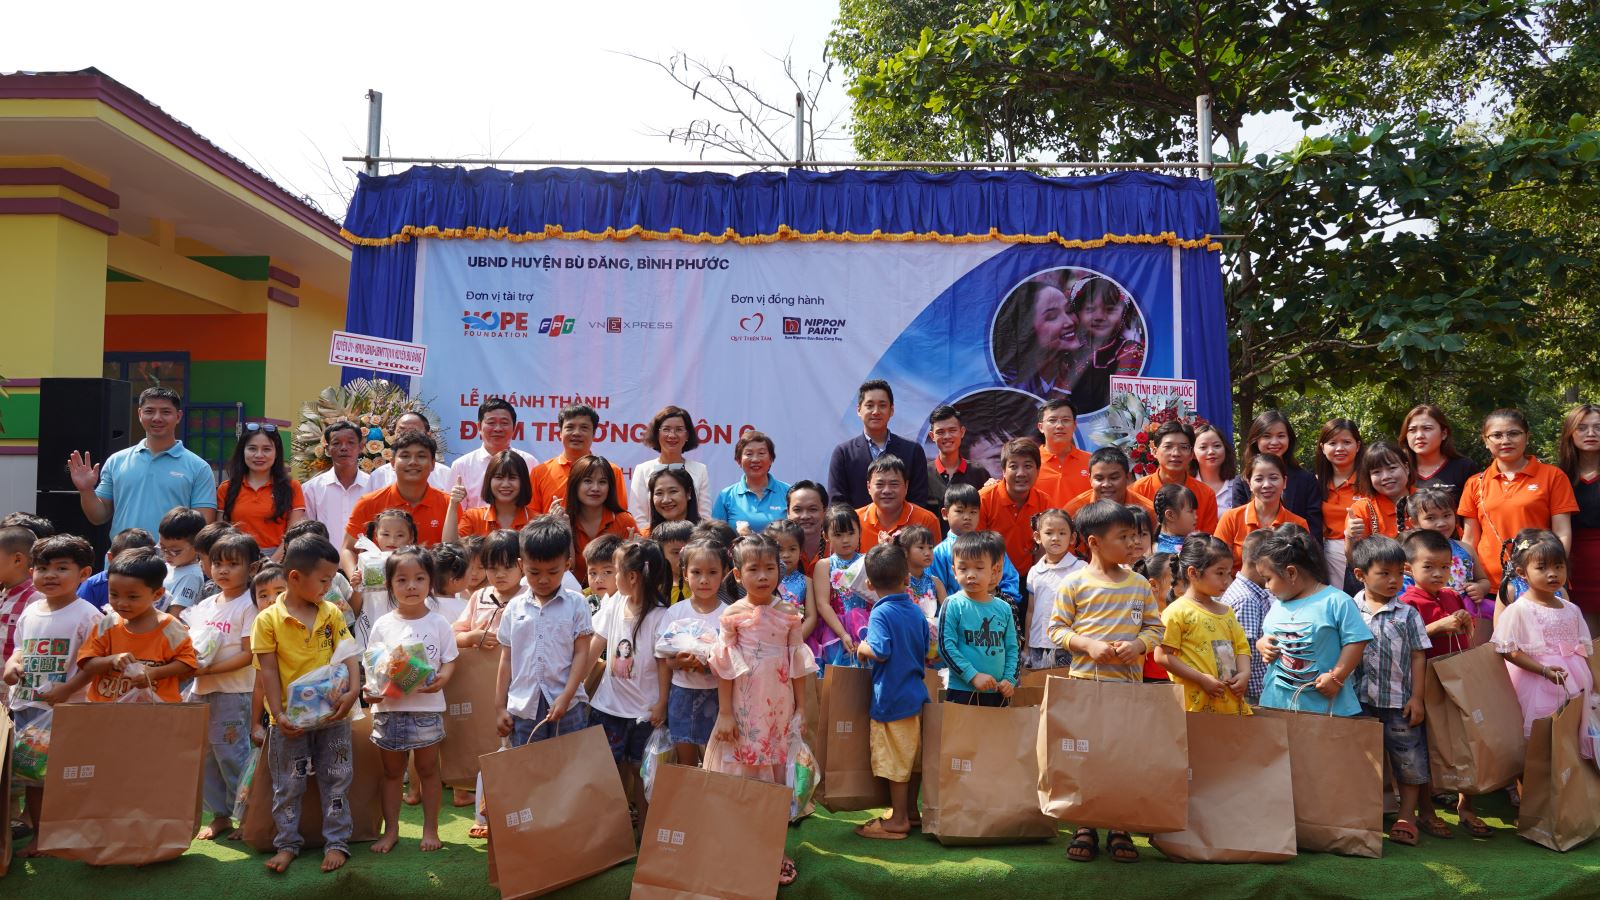 Một trong các hoạt động vì cộng đồng của FPT tại Bình Phước